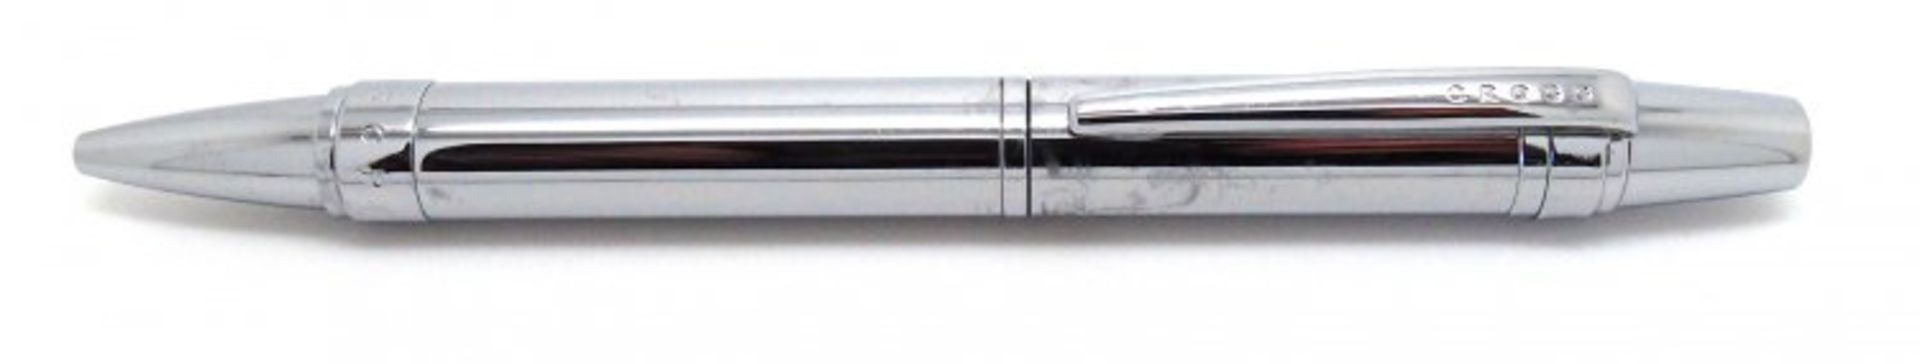 V Brand New Cross Nile Pure Chrome Ballpoint Pen ISP £27.90 (Ebay) - Image 2 of 4